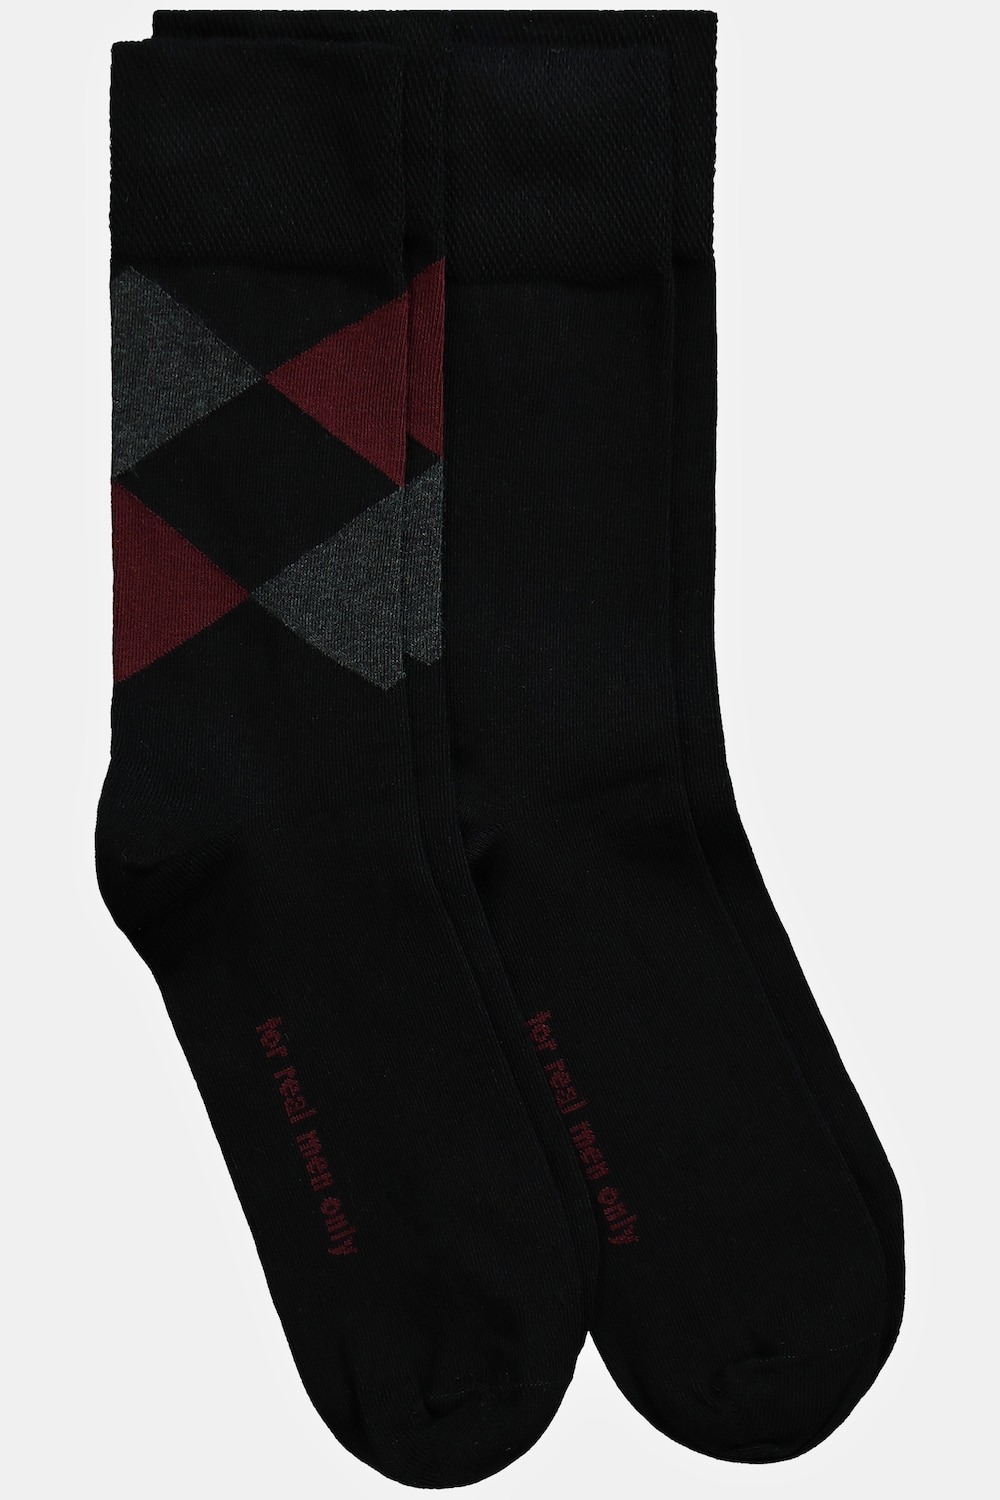 Grote Maten sokken, Heren, rood, Maat: 39-42, Katoen/Synthetische vezels, JP1880